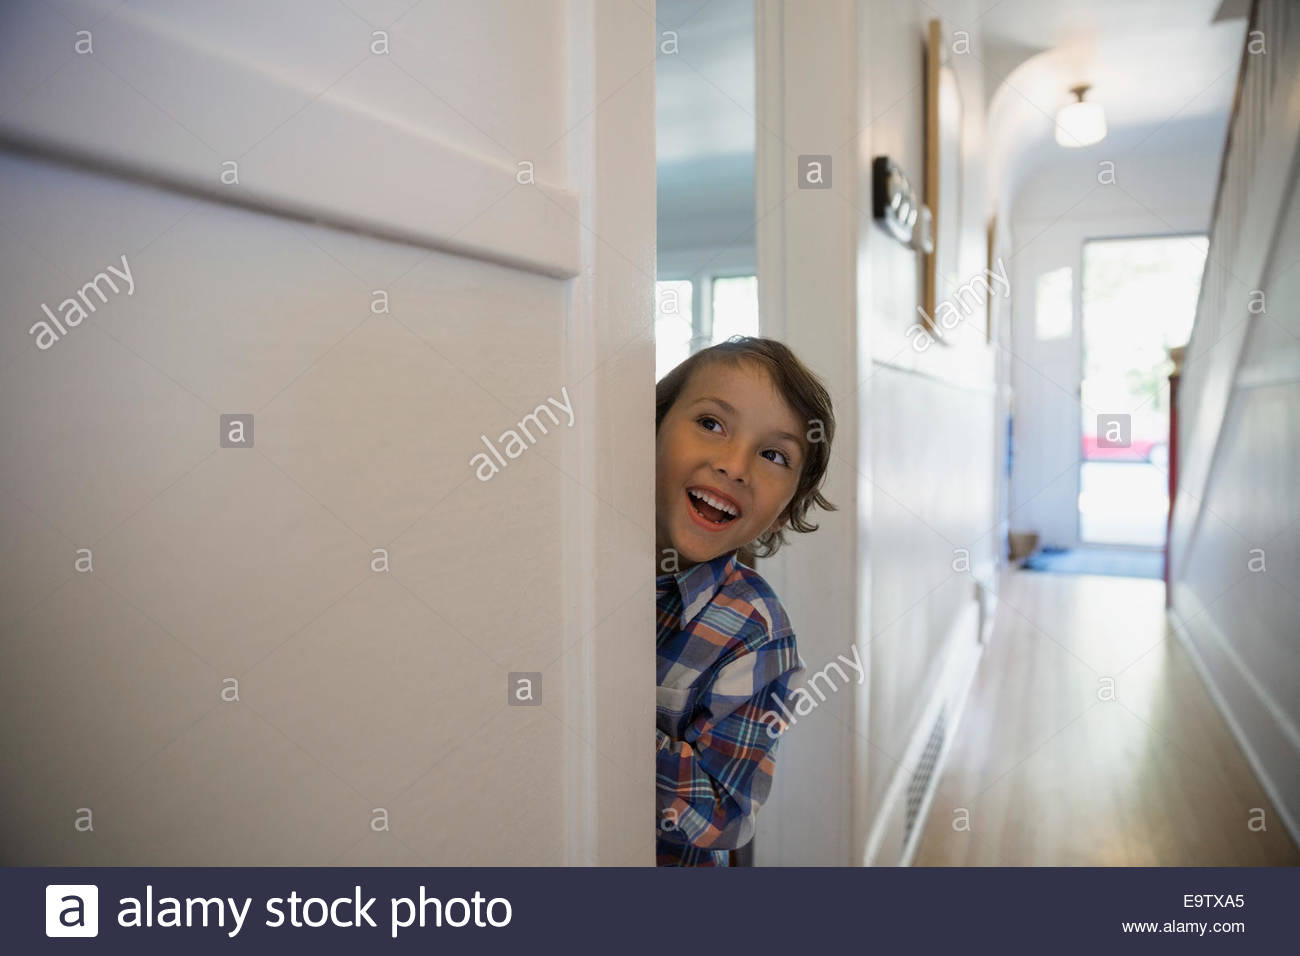 Excited boy in doorway Banque D'Images